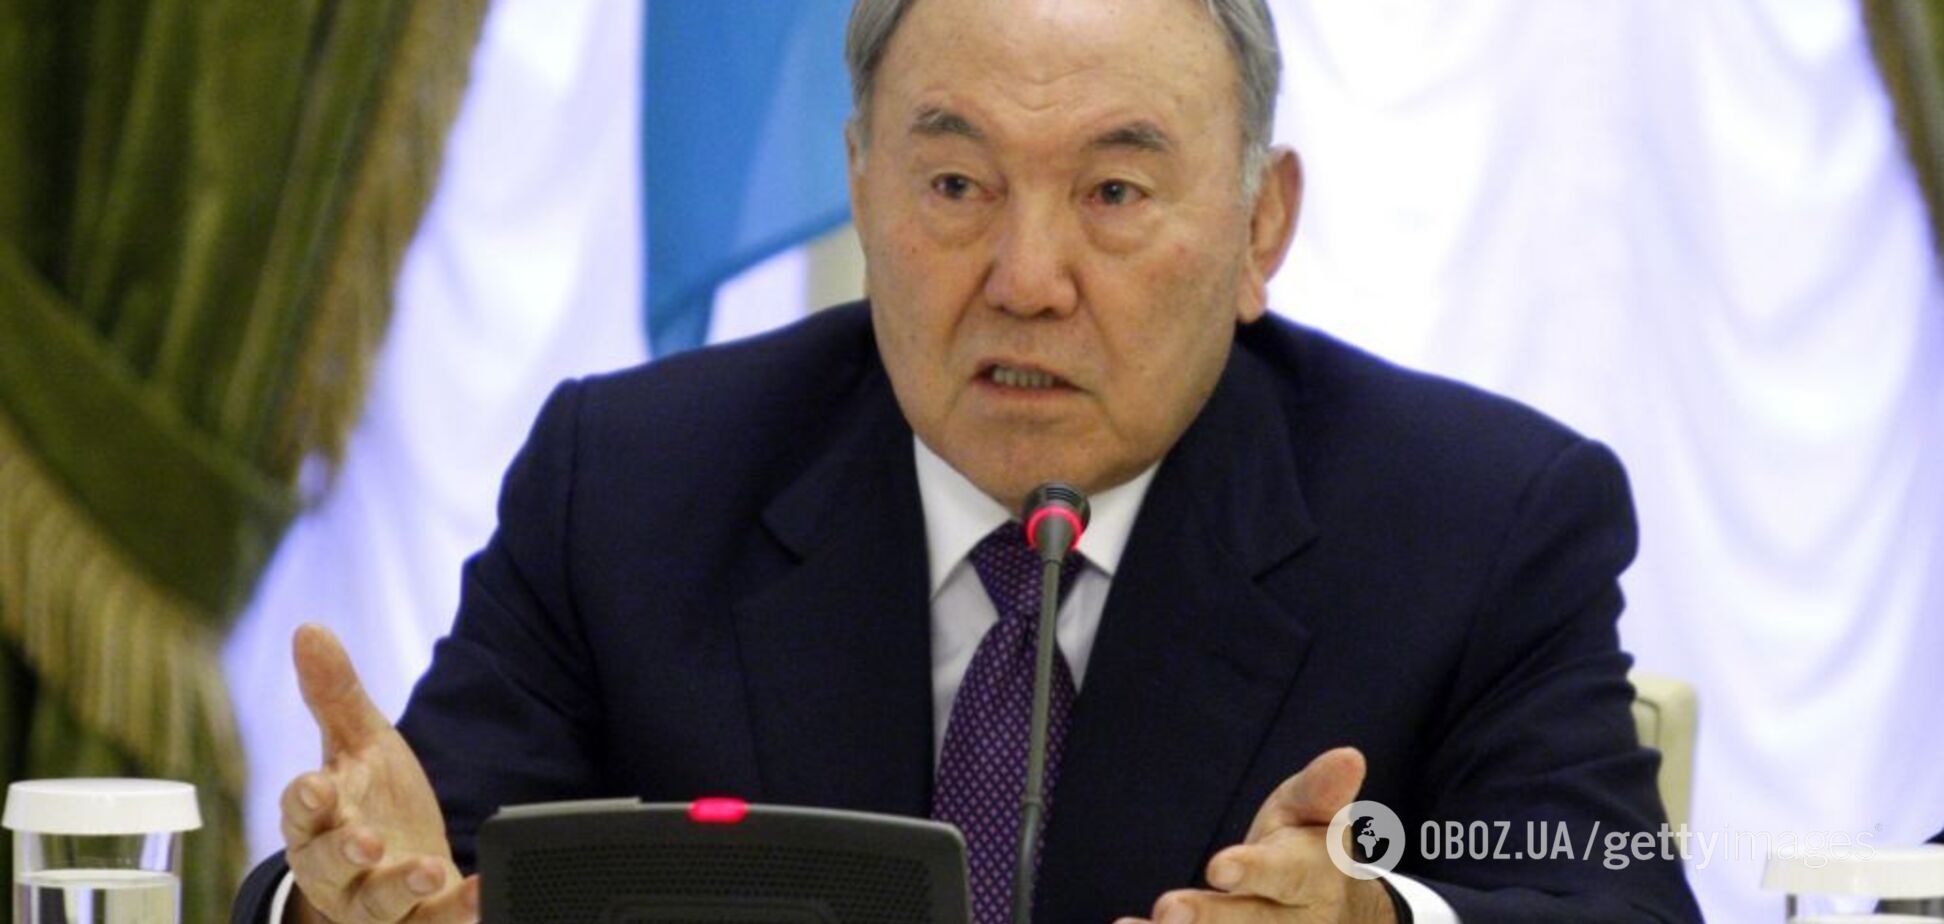 Уход Назарбаева: кто будет преемником и что будет делать Путин